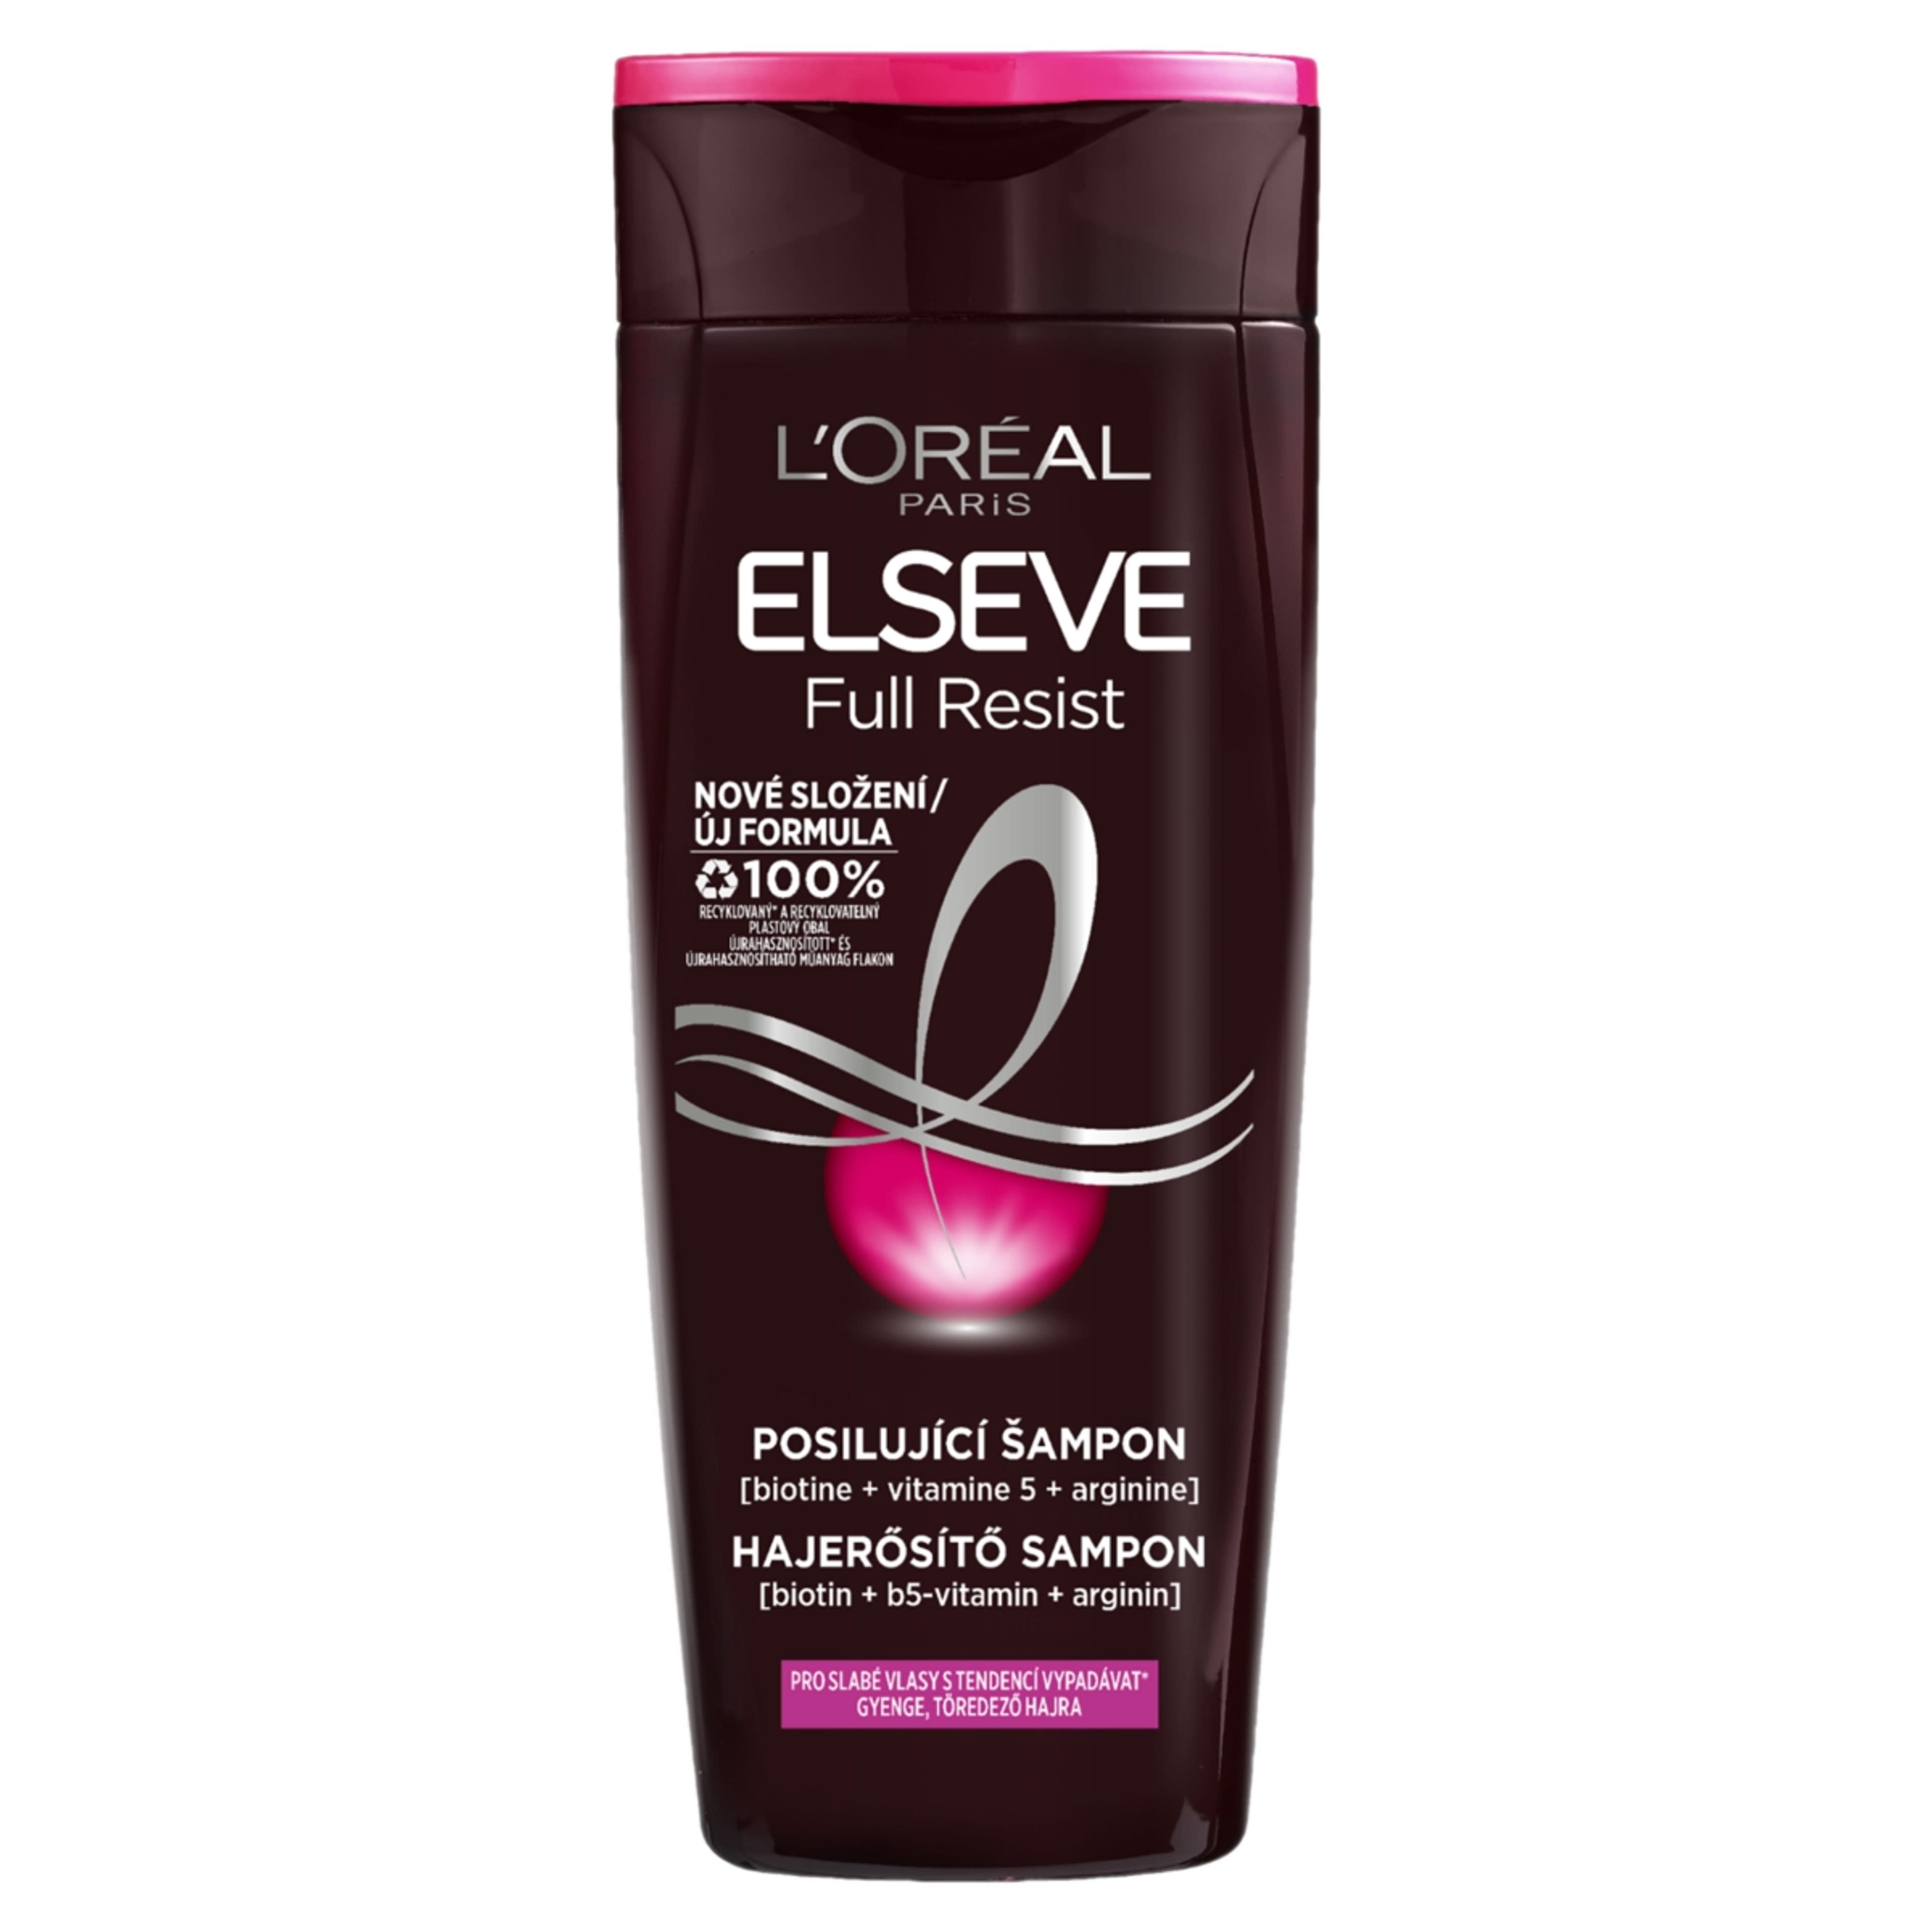 L'Oréal Paris Elseve Full Resist hajerősítő sampon - 400 ml-1